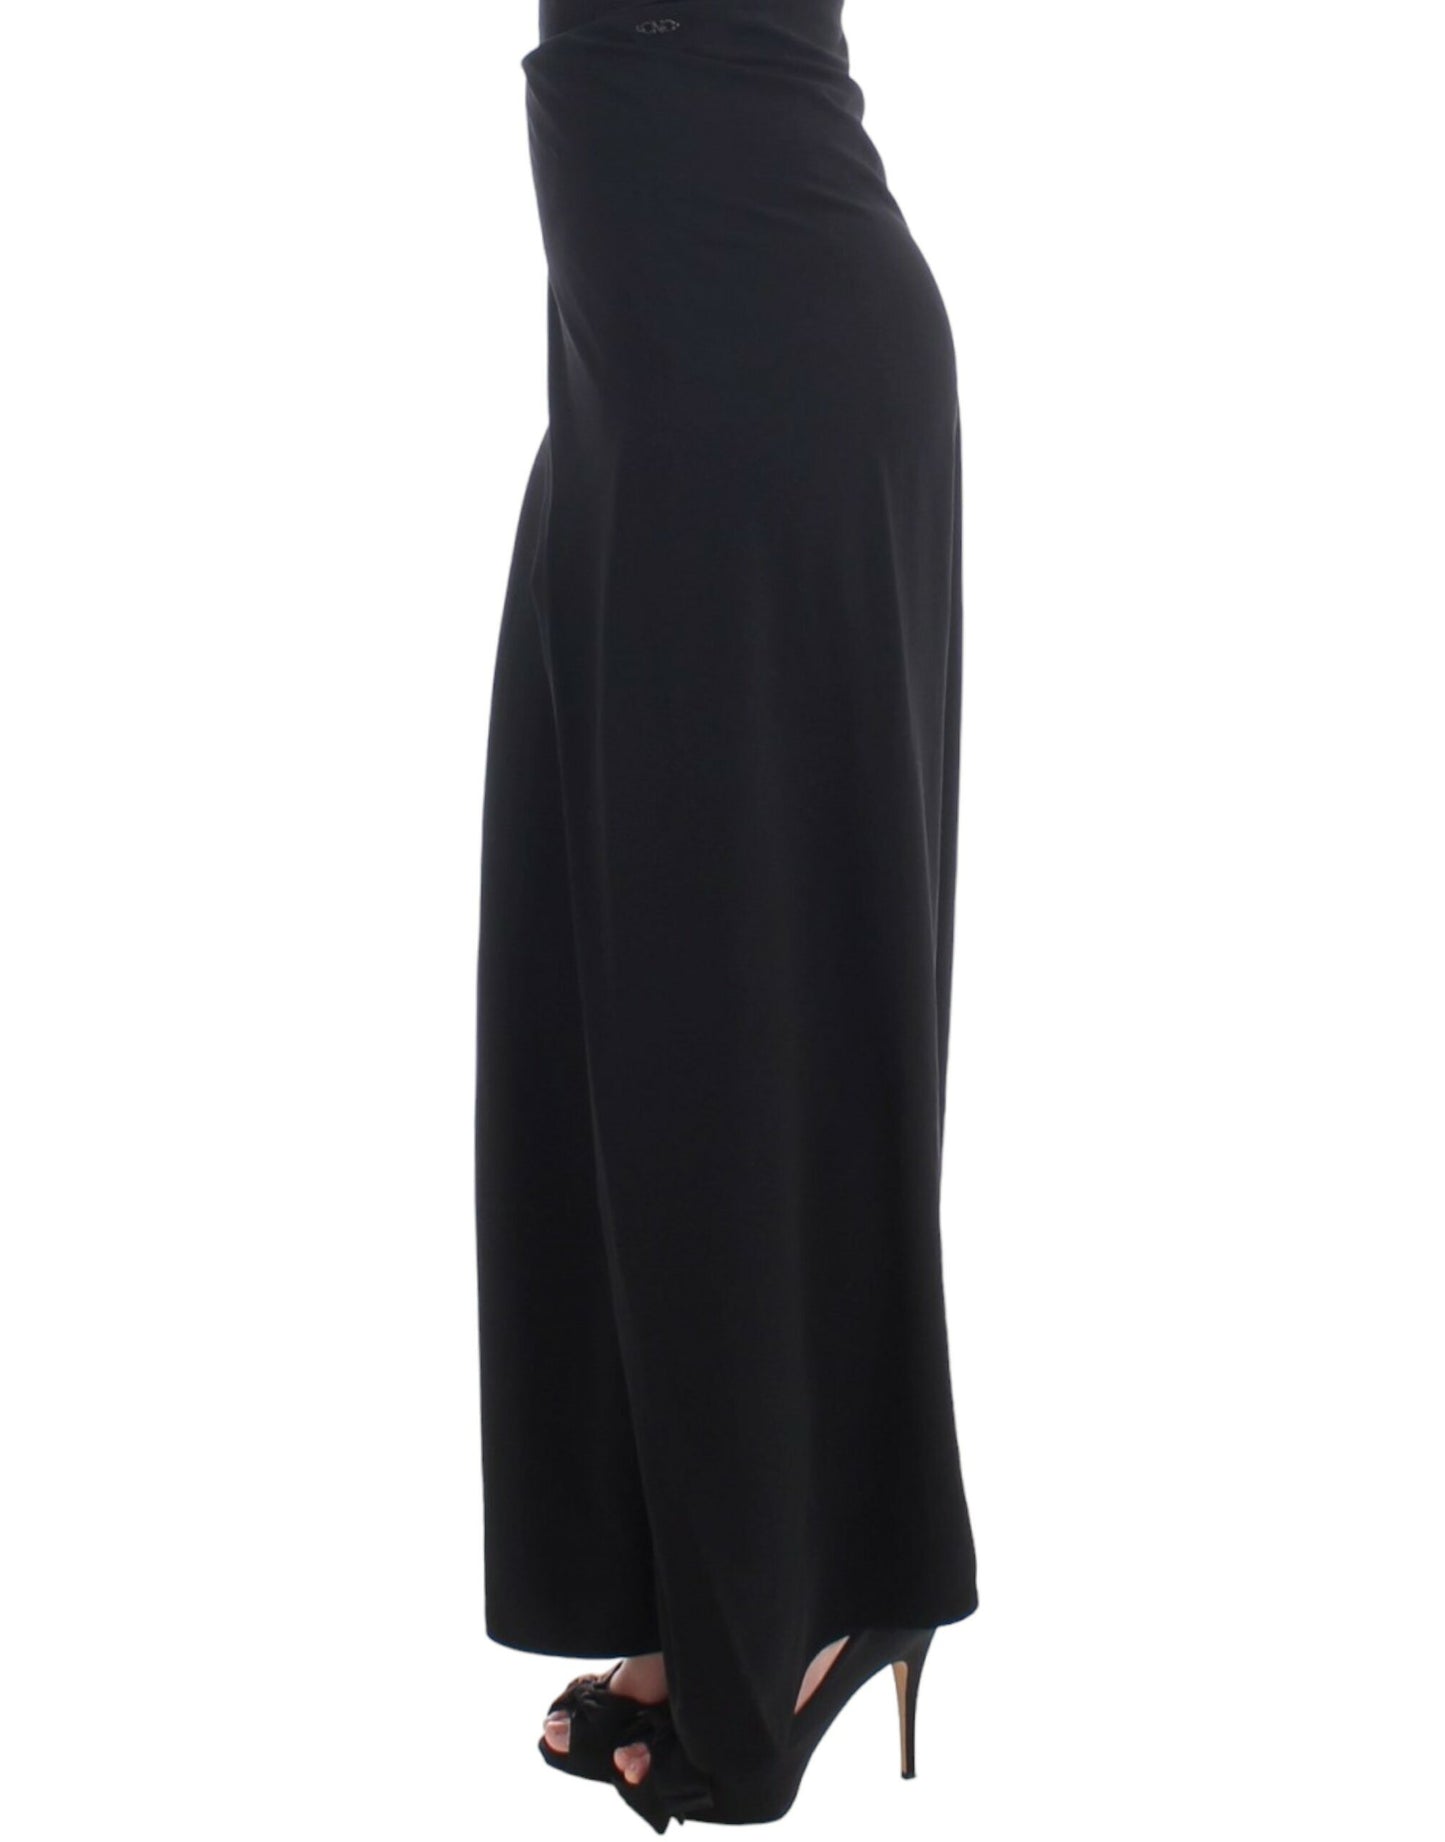 Elegant Black Maxi Skirt for Evening Elegance